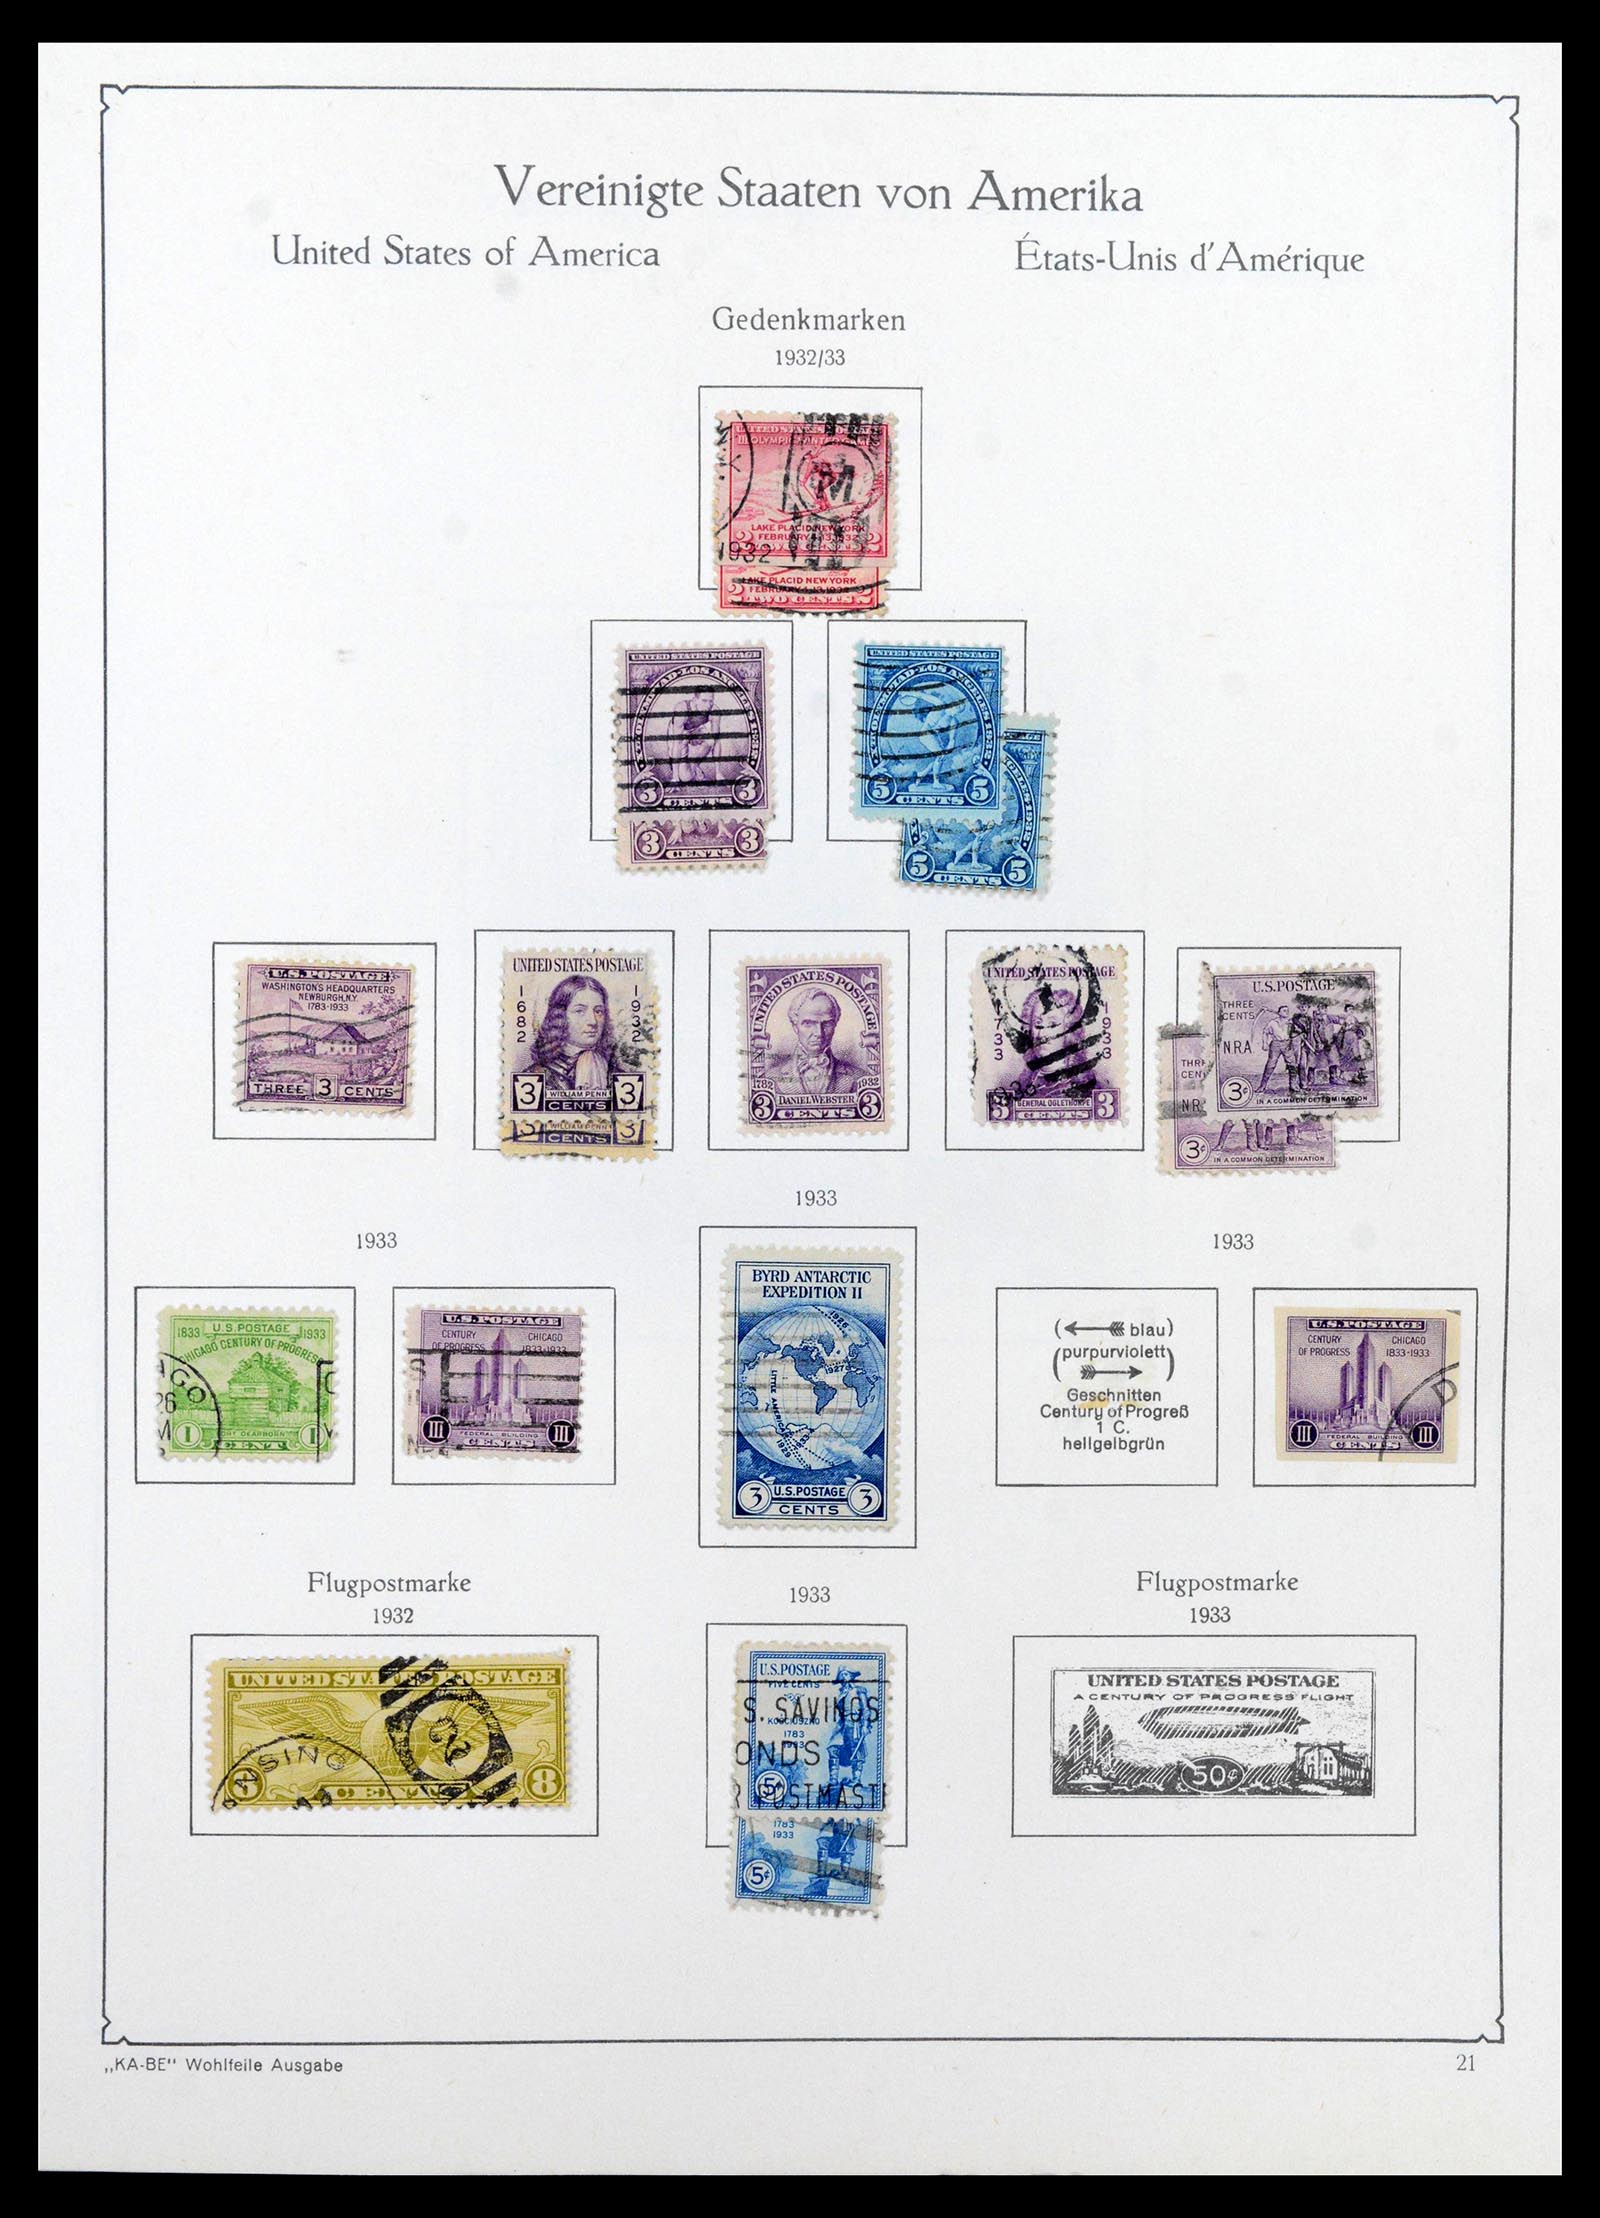 39444 0020 - Stamp collection 39444 USA 1861-2008.